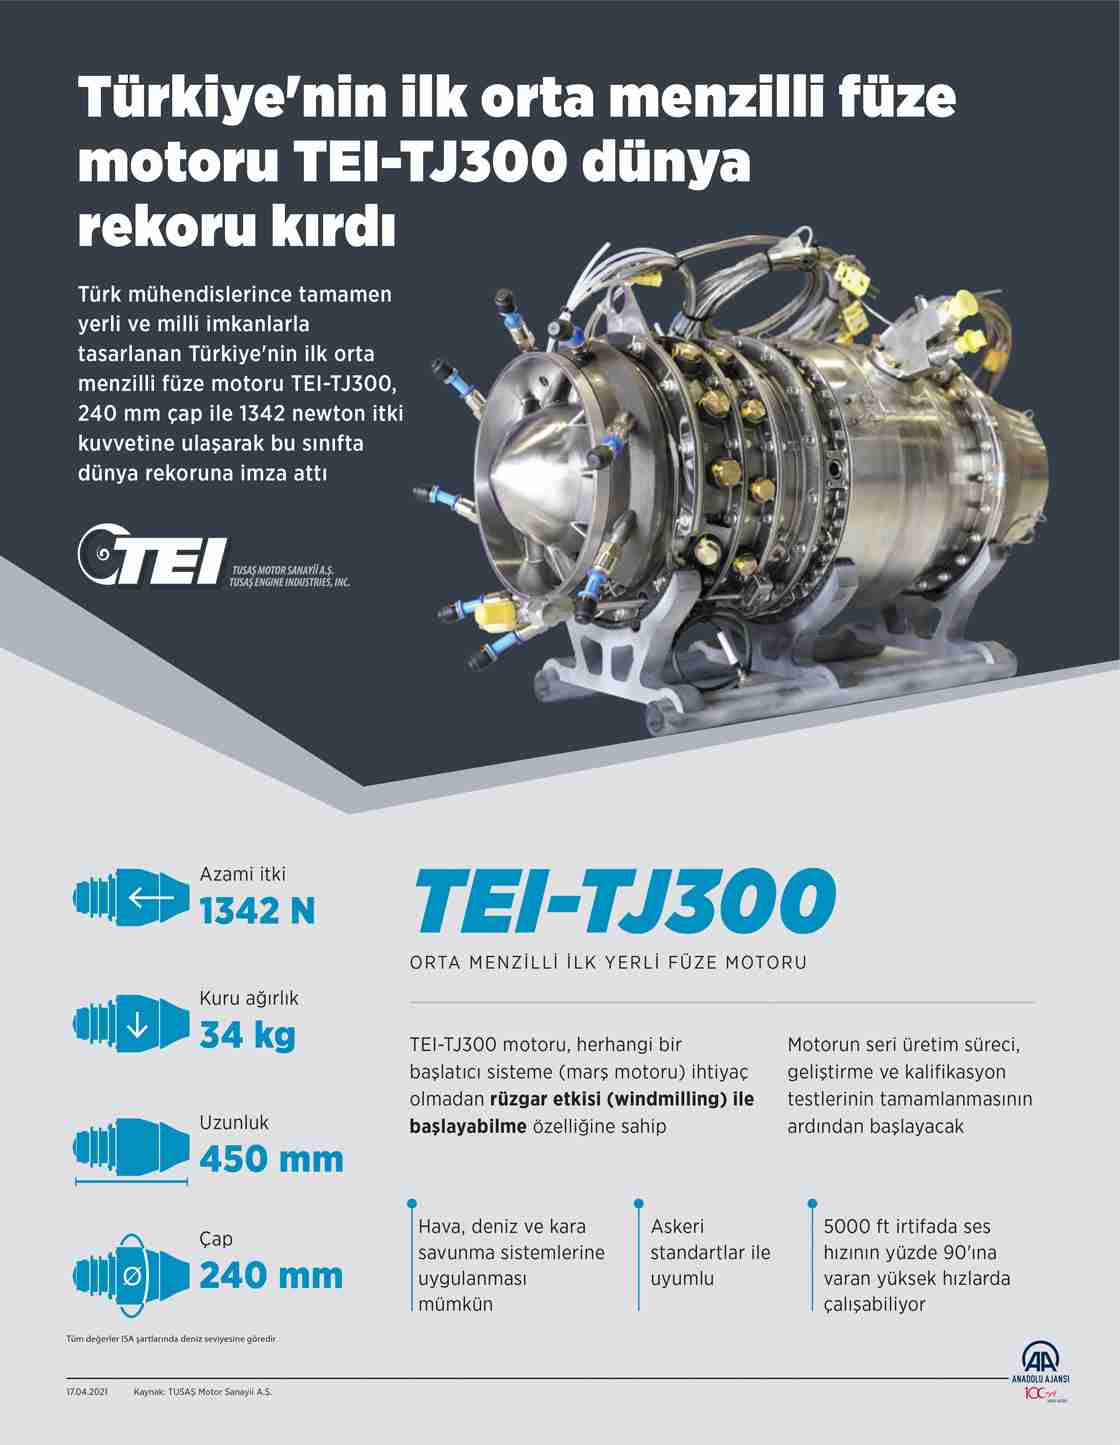 TEI-TJ300, 2 yıl içinde seri üretime geçecek